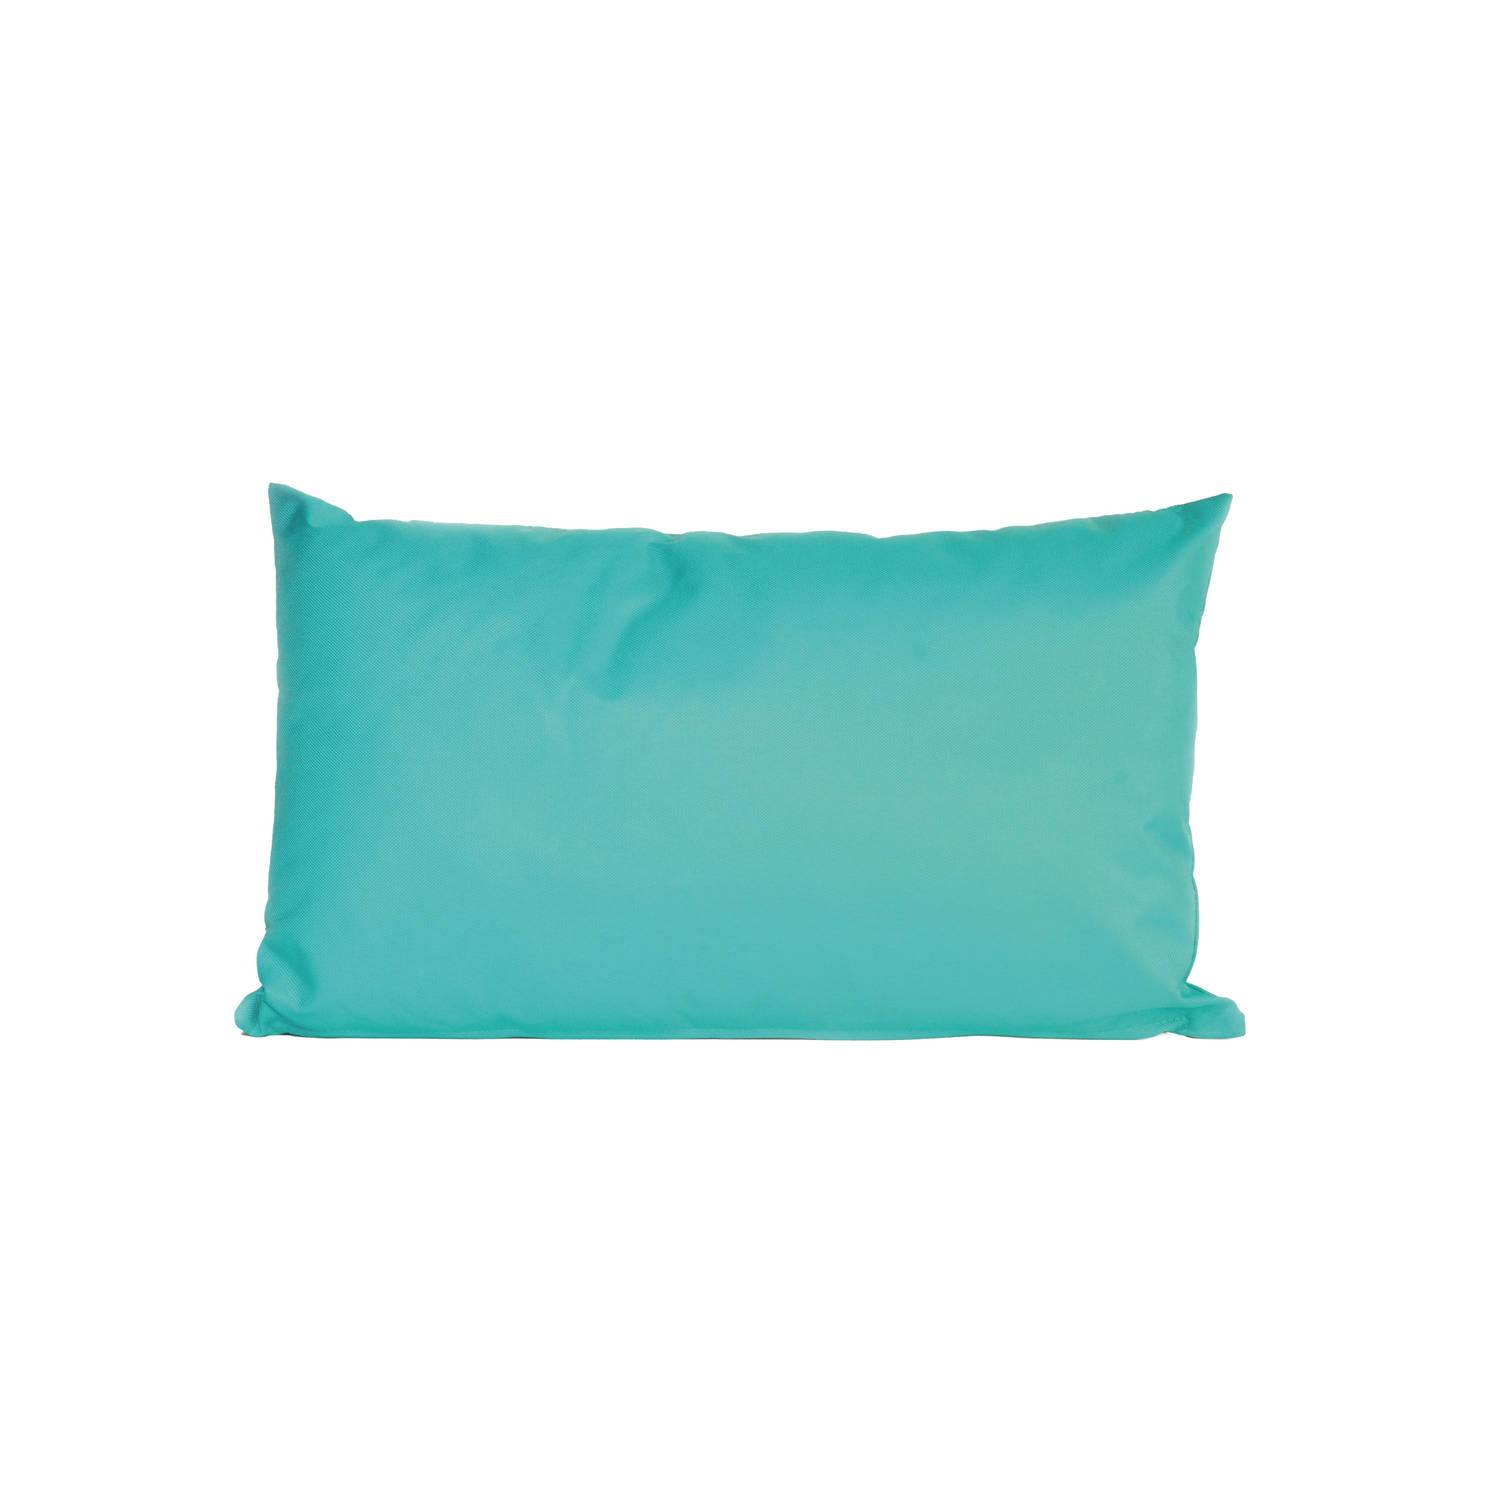 vod stuk nadering Bank/sier kussens voor binnen en buiten in de kleur aqua blauw 30 x 50 cm -  Sierkussens | Blokker